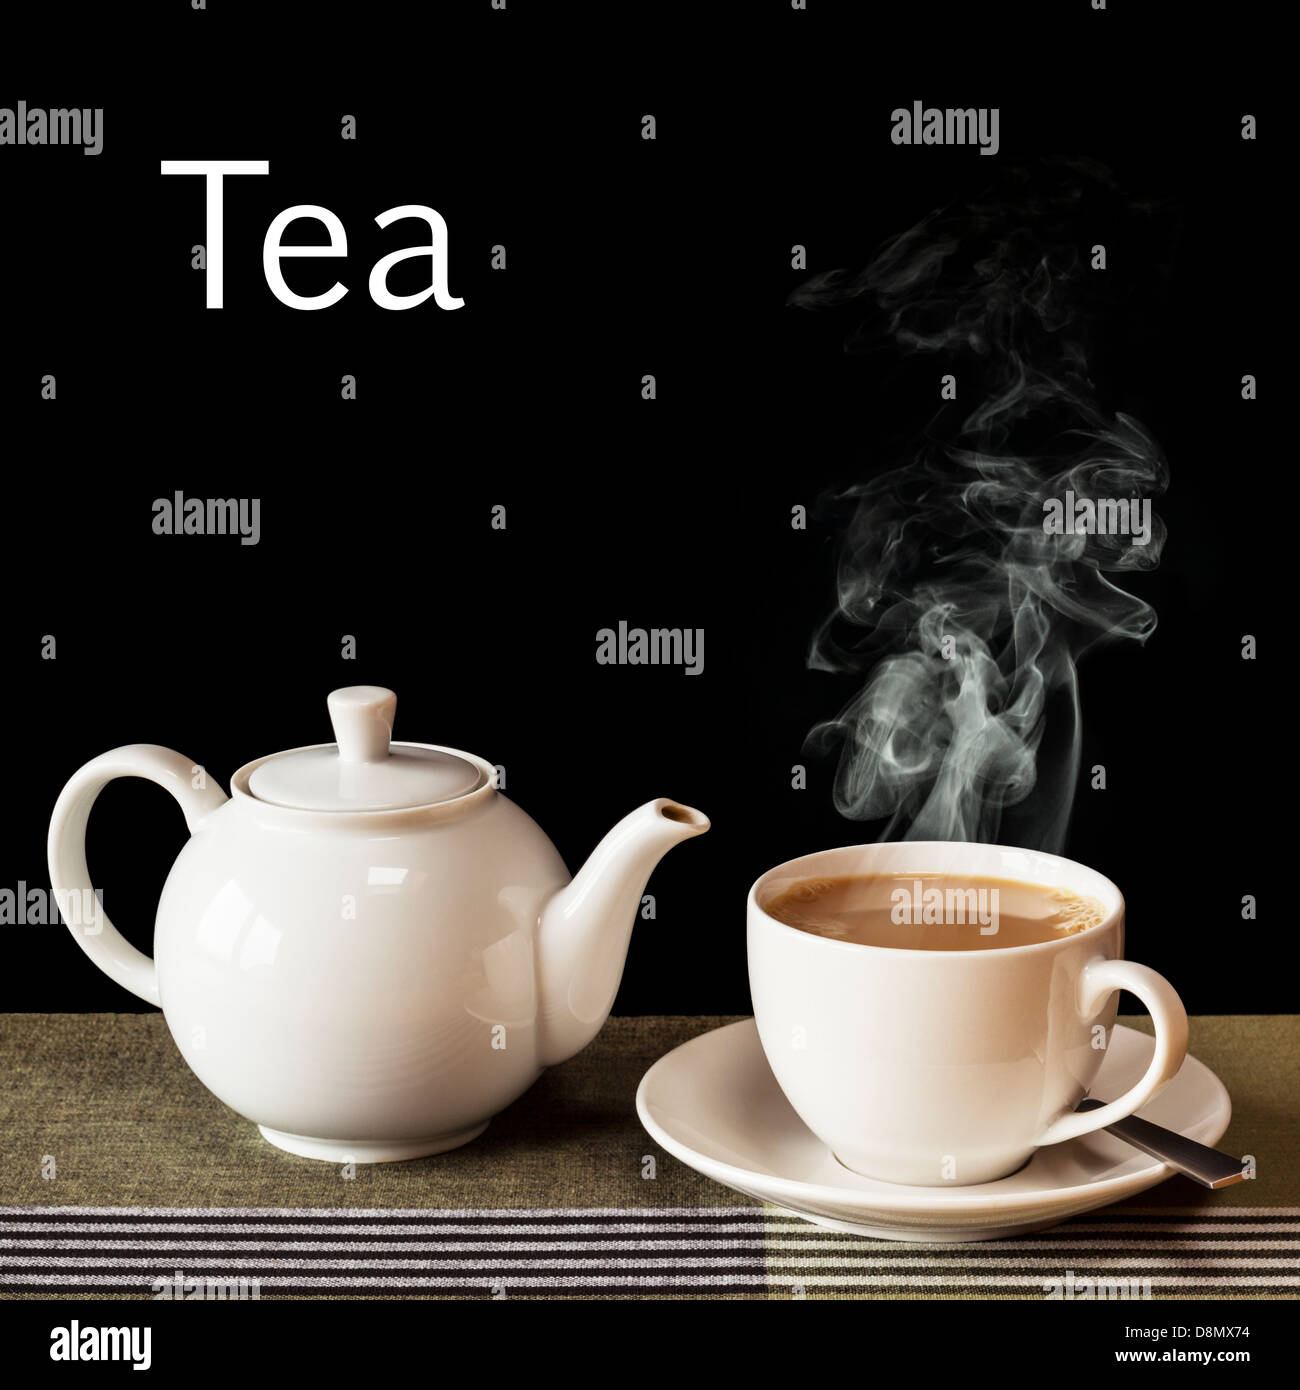 Tee-Konzept - eine heiße, dampfende Tasse Tee mit einer Teekanne auf das Wort "Tee" in weiß auf schwarzem Hintergrund. Stockfoto